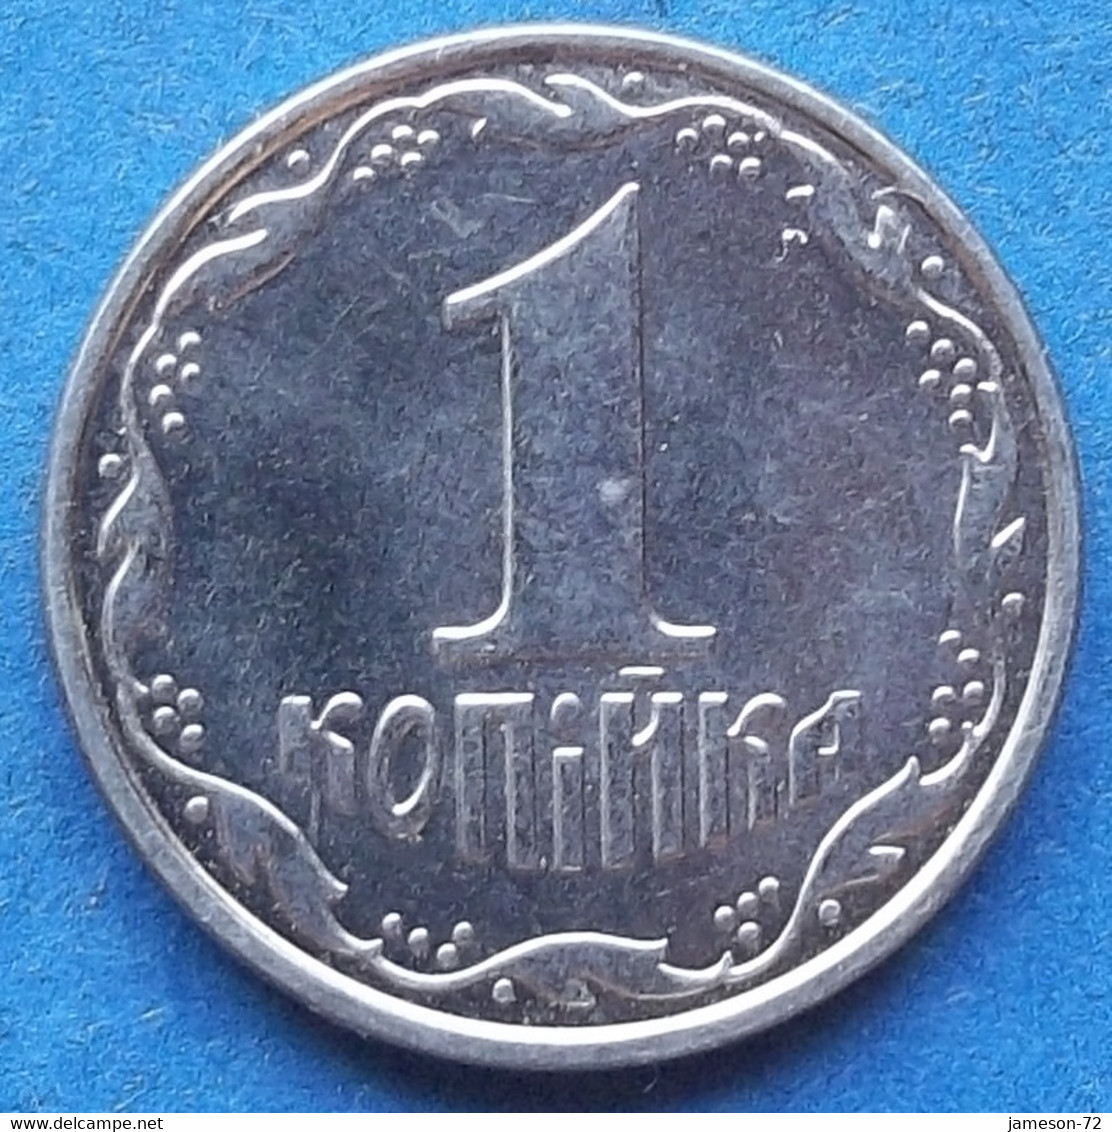 UKRAINE - 1 Kopiyka 2012 KM# 6 Reform Coinage (1996) - Edelweiss Coins - Ukraine